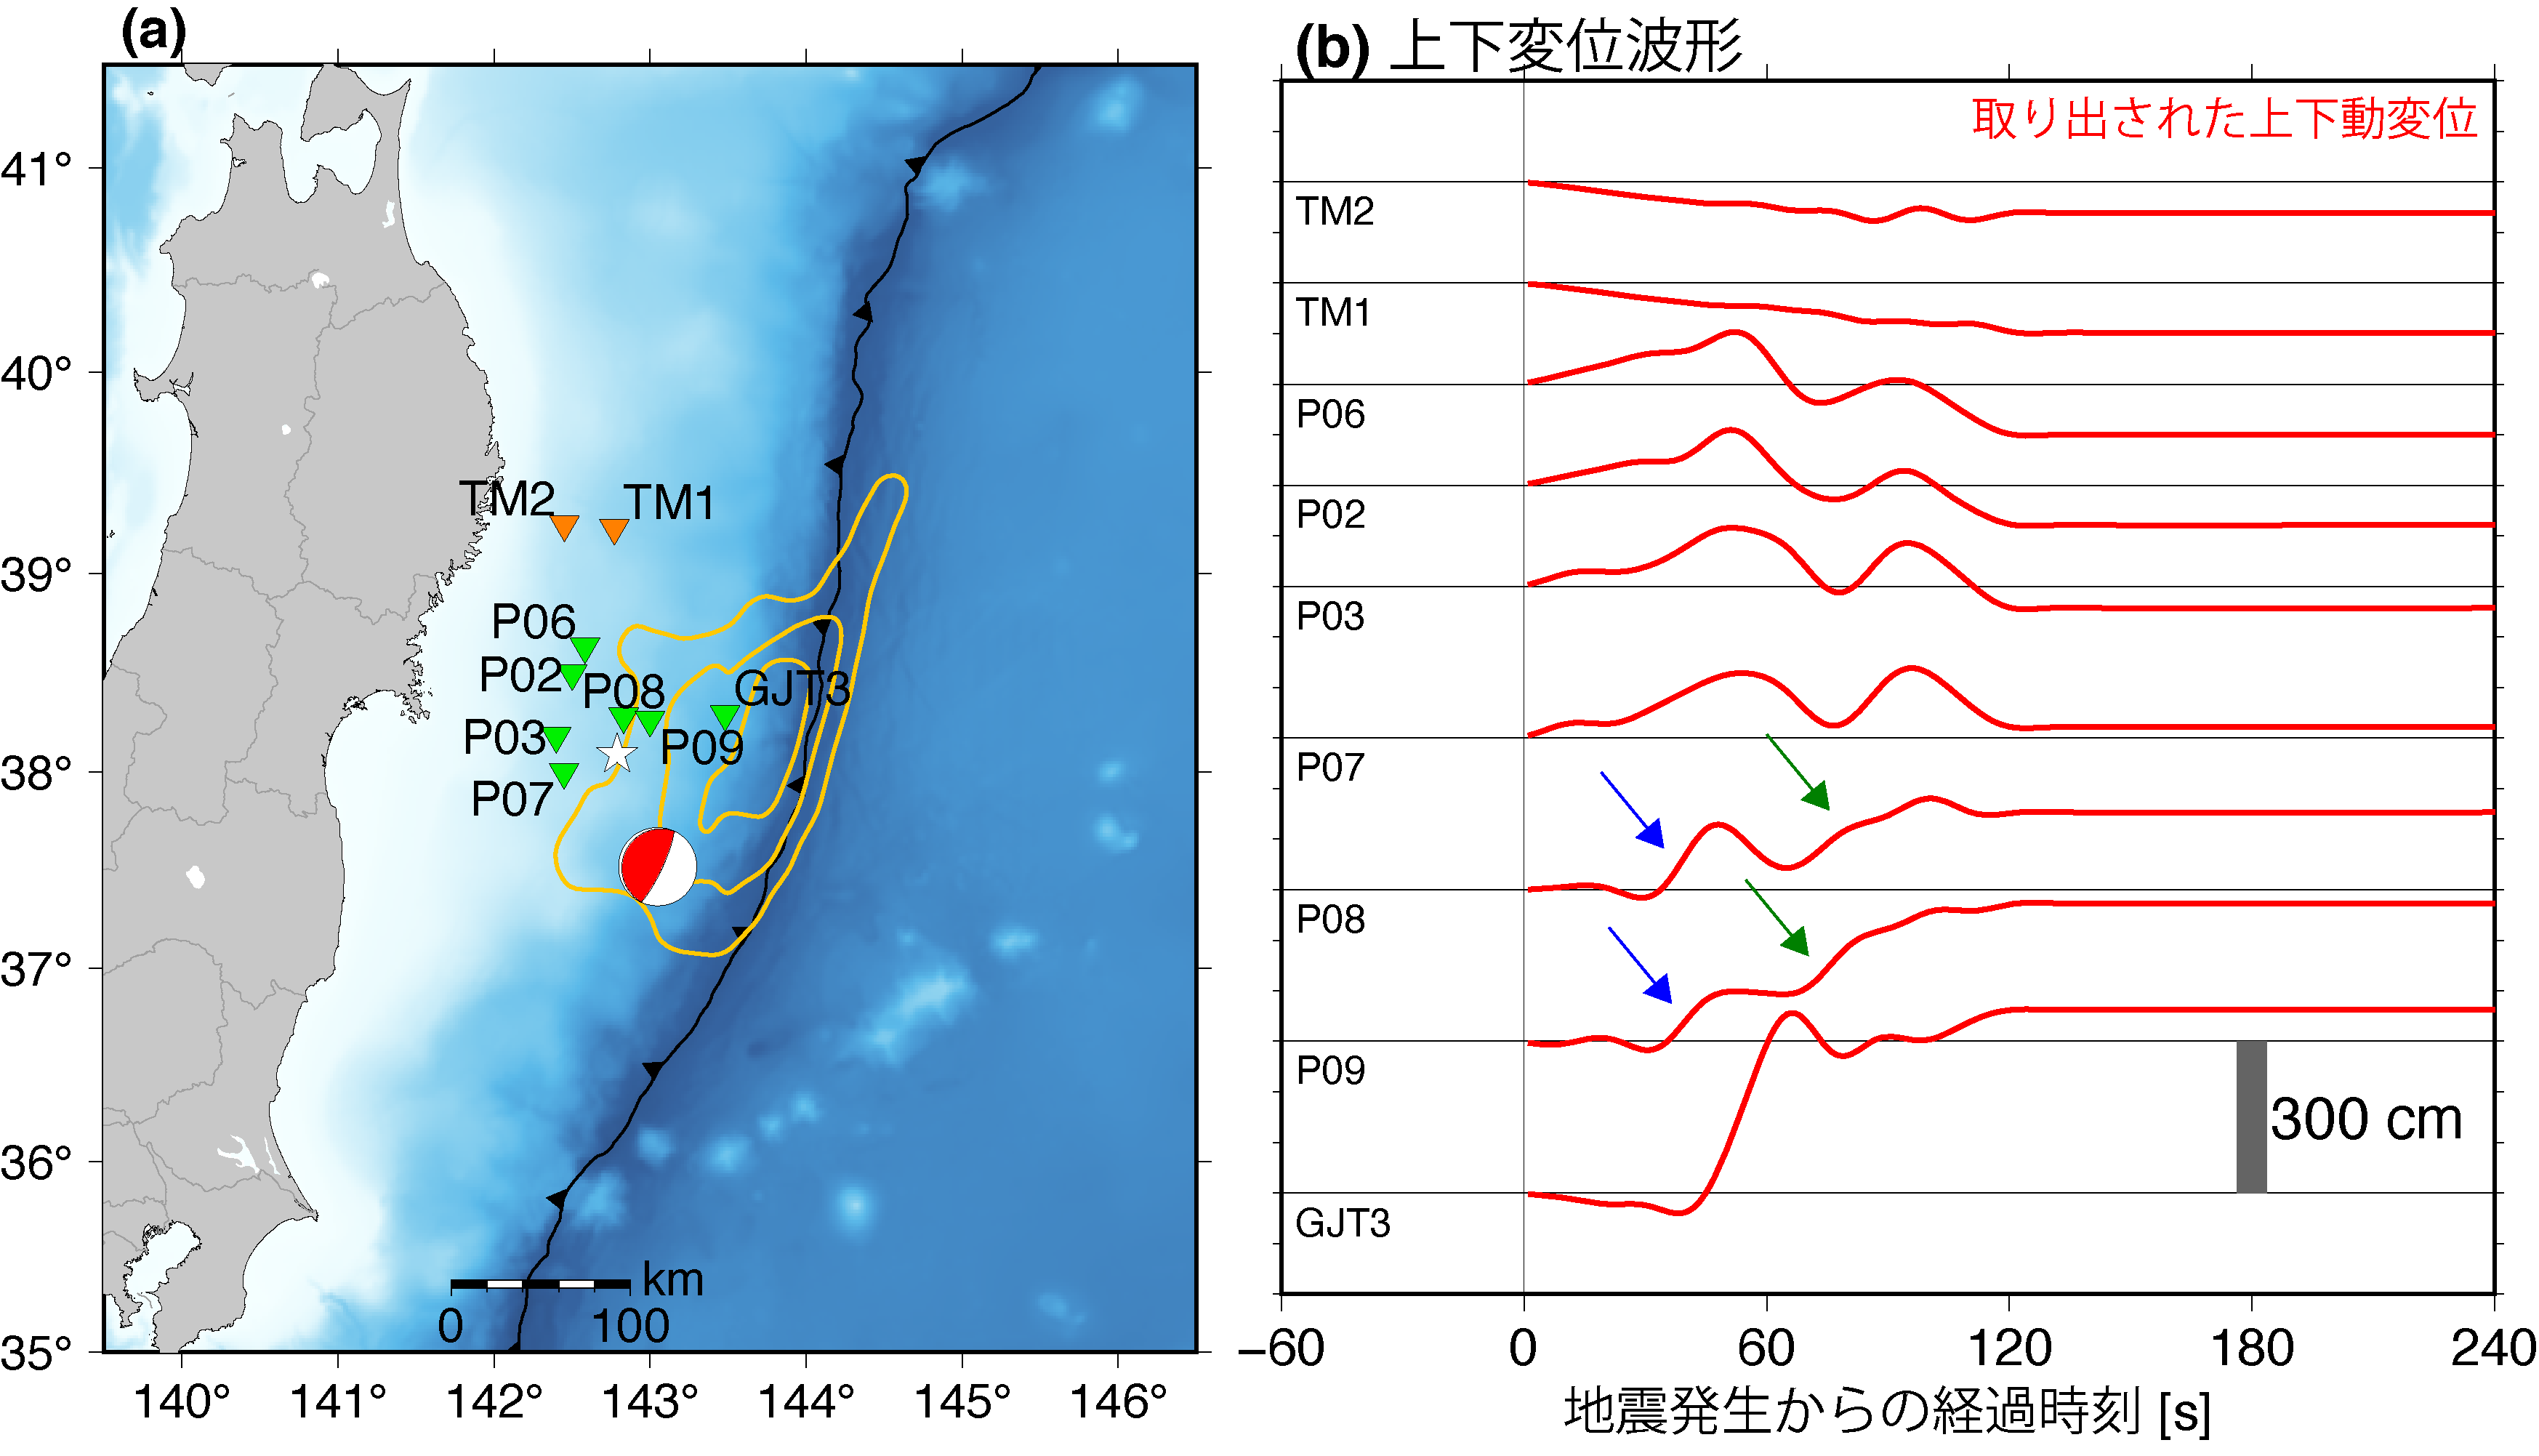 (a) 2011年東北沖地震時に震源域の周辺に設置されていた海底水圧計の観測点の位置．白い星は東北沖地震の震央，CMT解はGlobal CMT のものを表す．オレンジ色のコンター線は東北沖地震時の津波の波源の分布を表す．(b) 本解析により分離された東北沖地震時の震源直上の上下動変位の地震動 (周期 ≥ 20 s，赤線)．震源の真上に設置された観測点P08，P09で得られた変位波形に見えた2段階の変動を青と緑の矢印で示している．